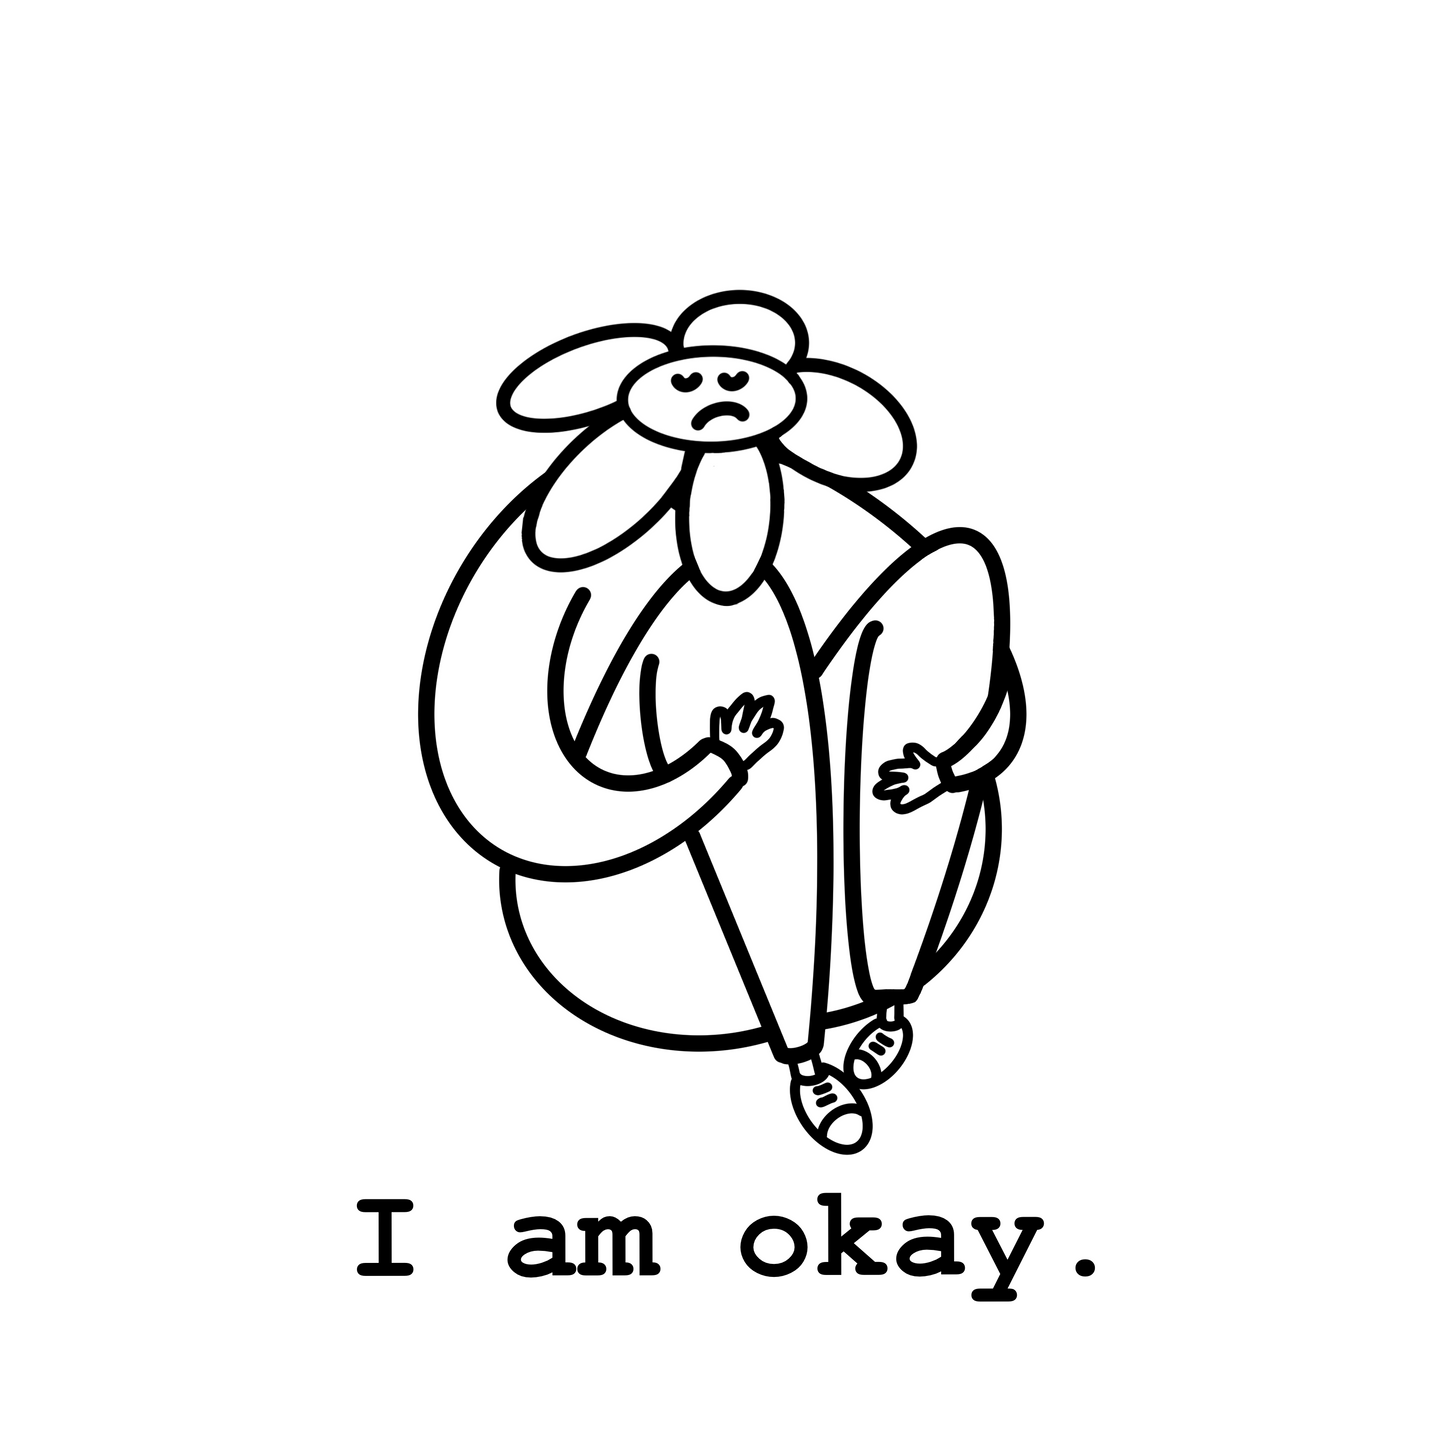 Plotterdatei "I am okay"